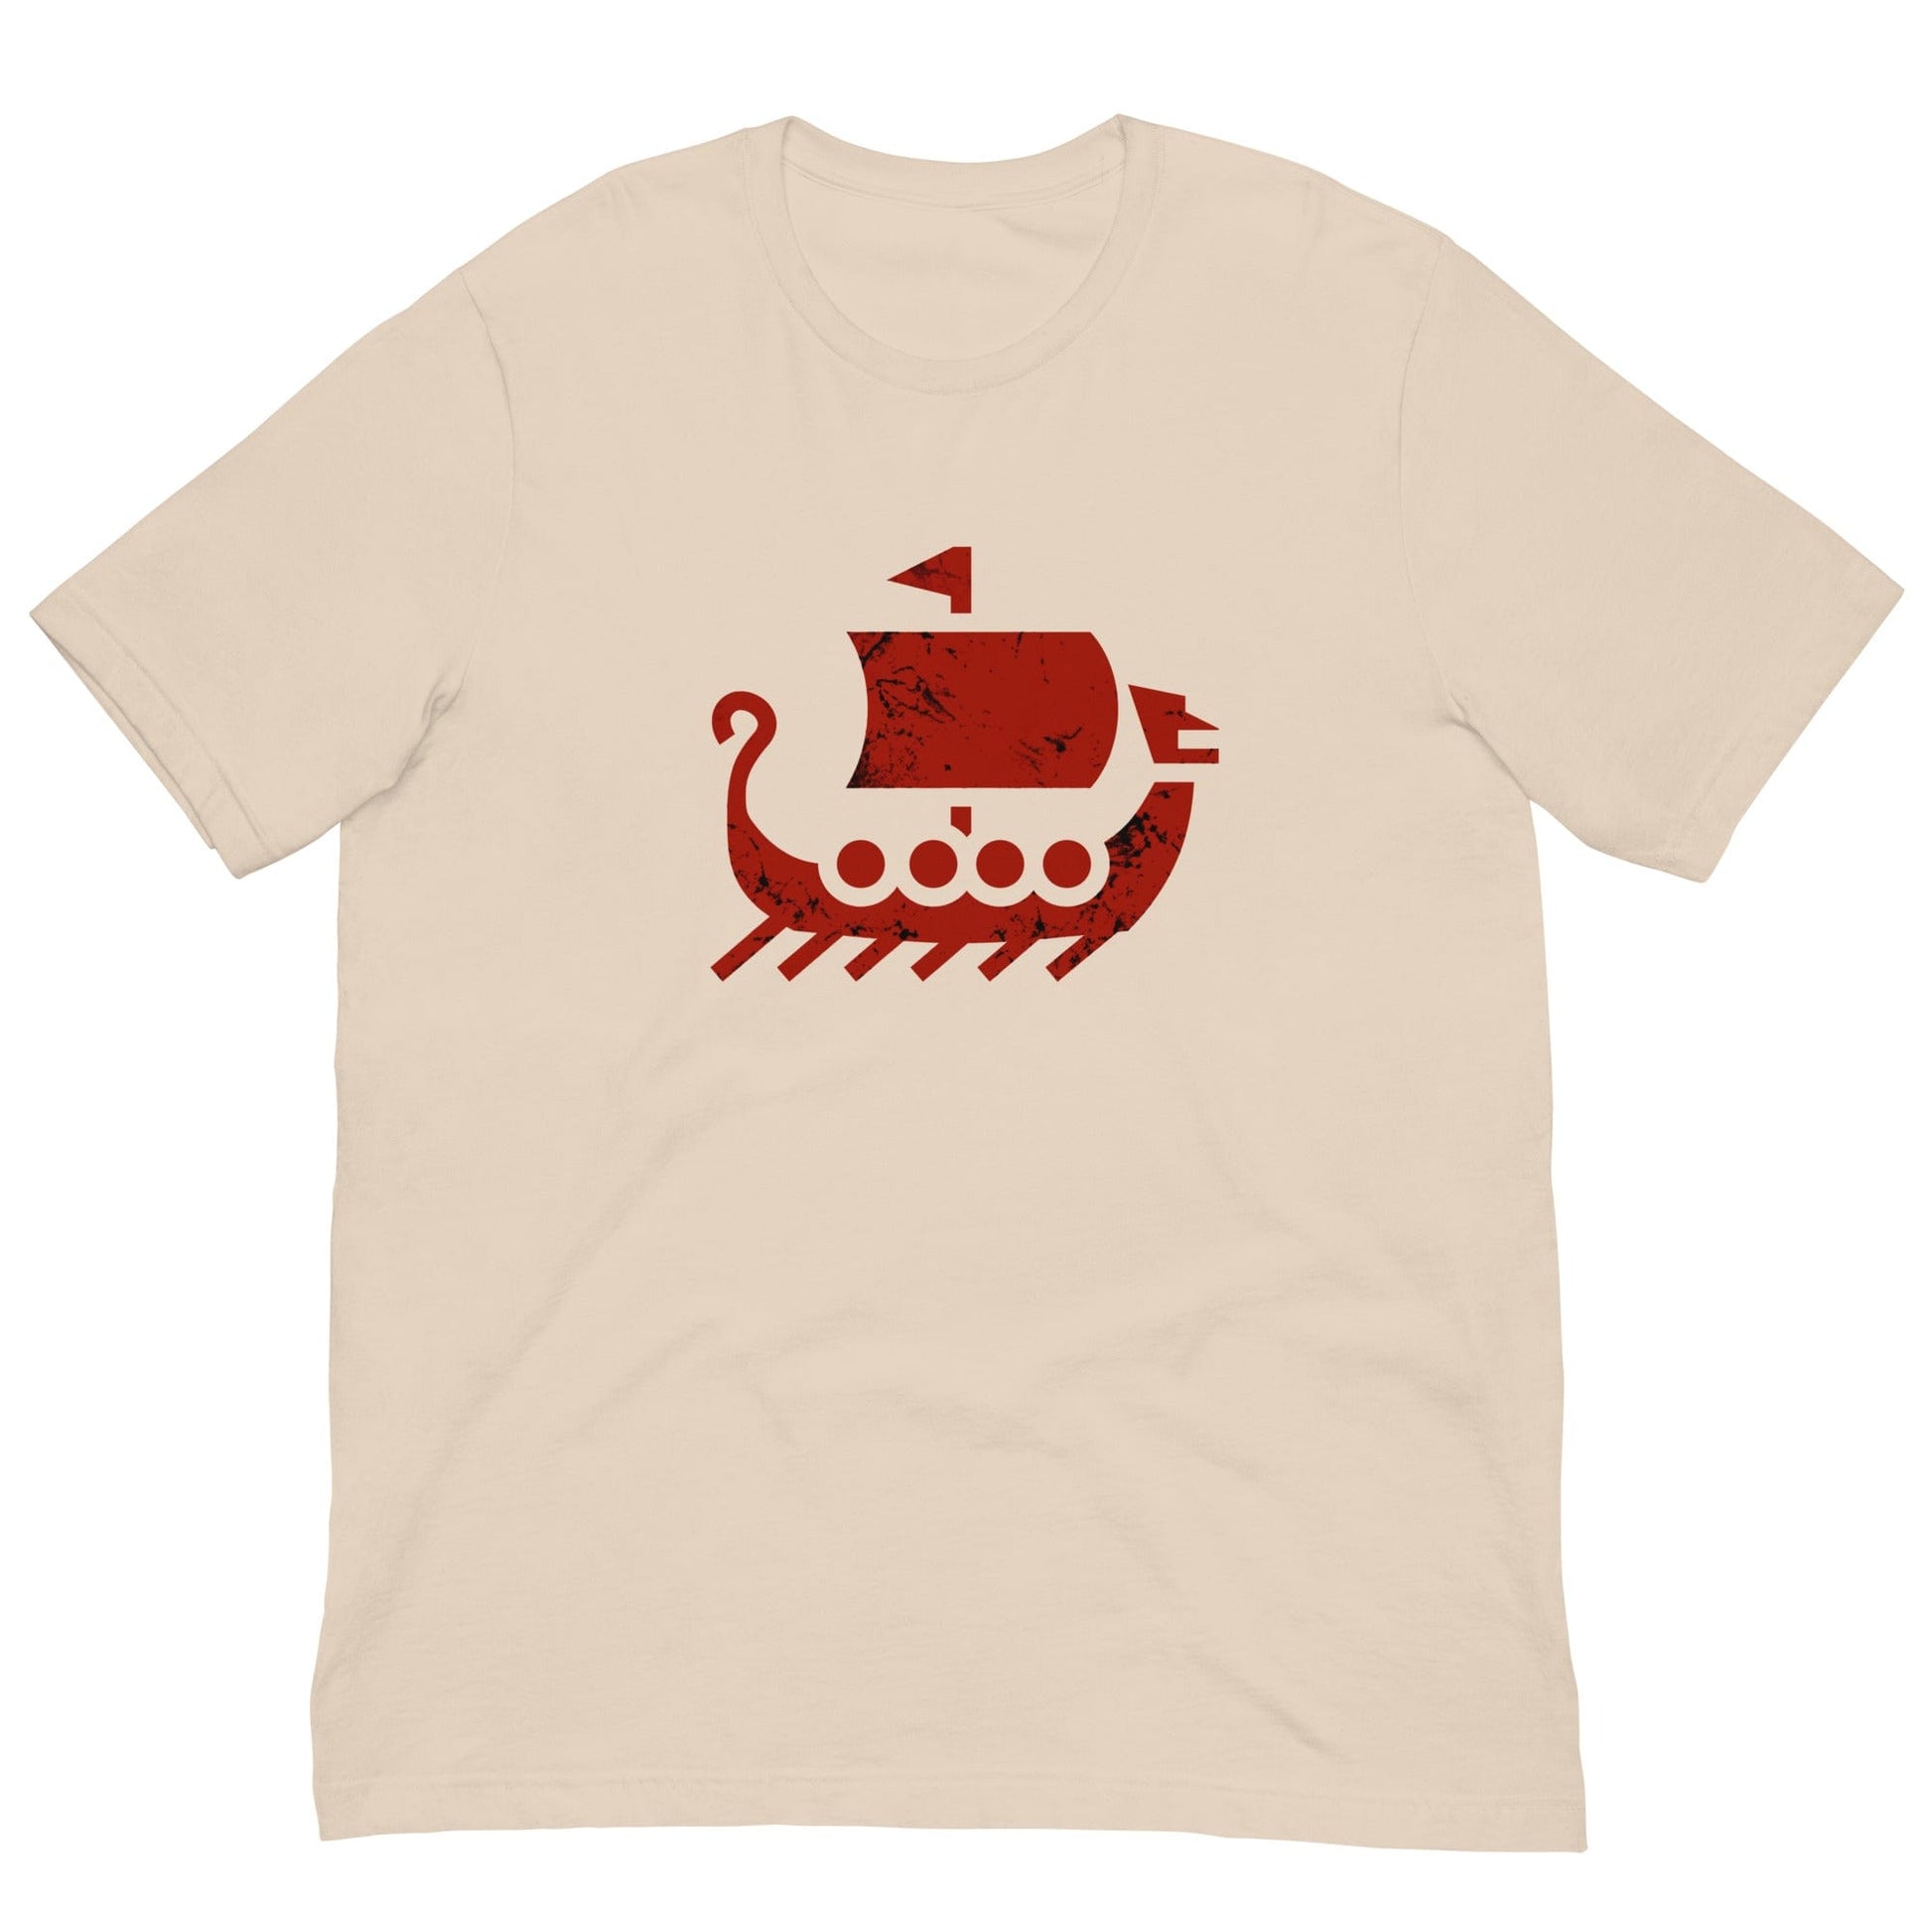 Viking Drakkar Ship T-shirt Soft Cream / XS